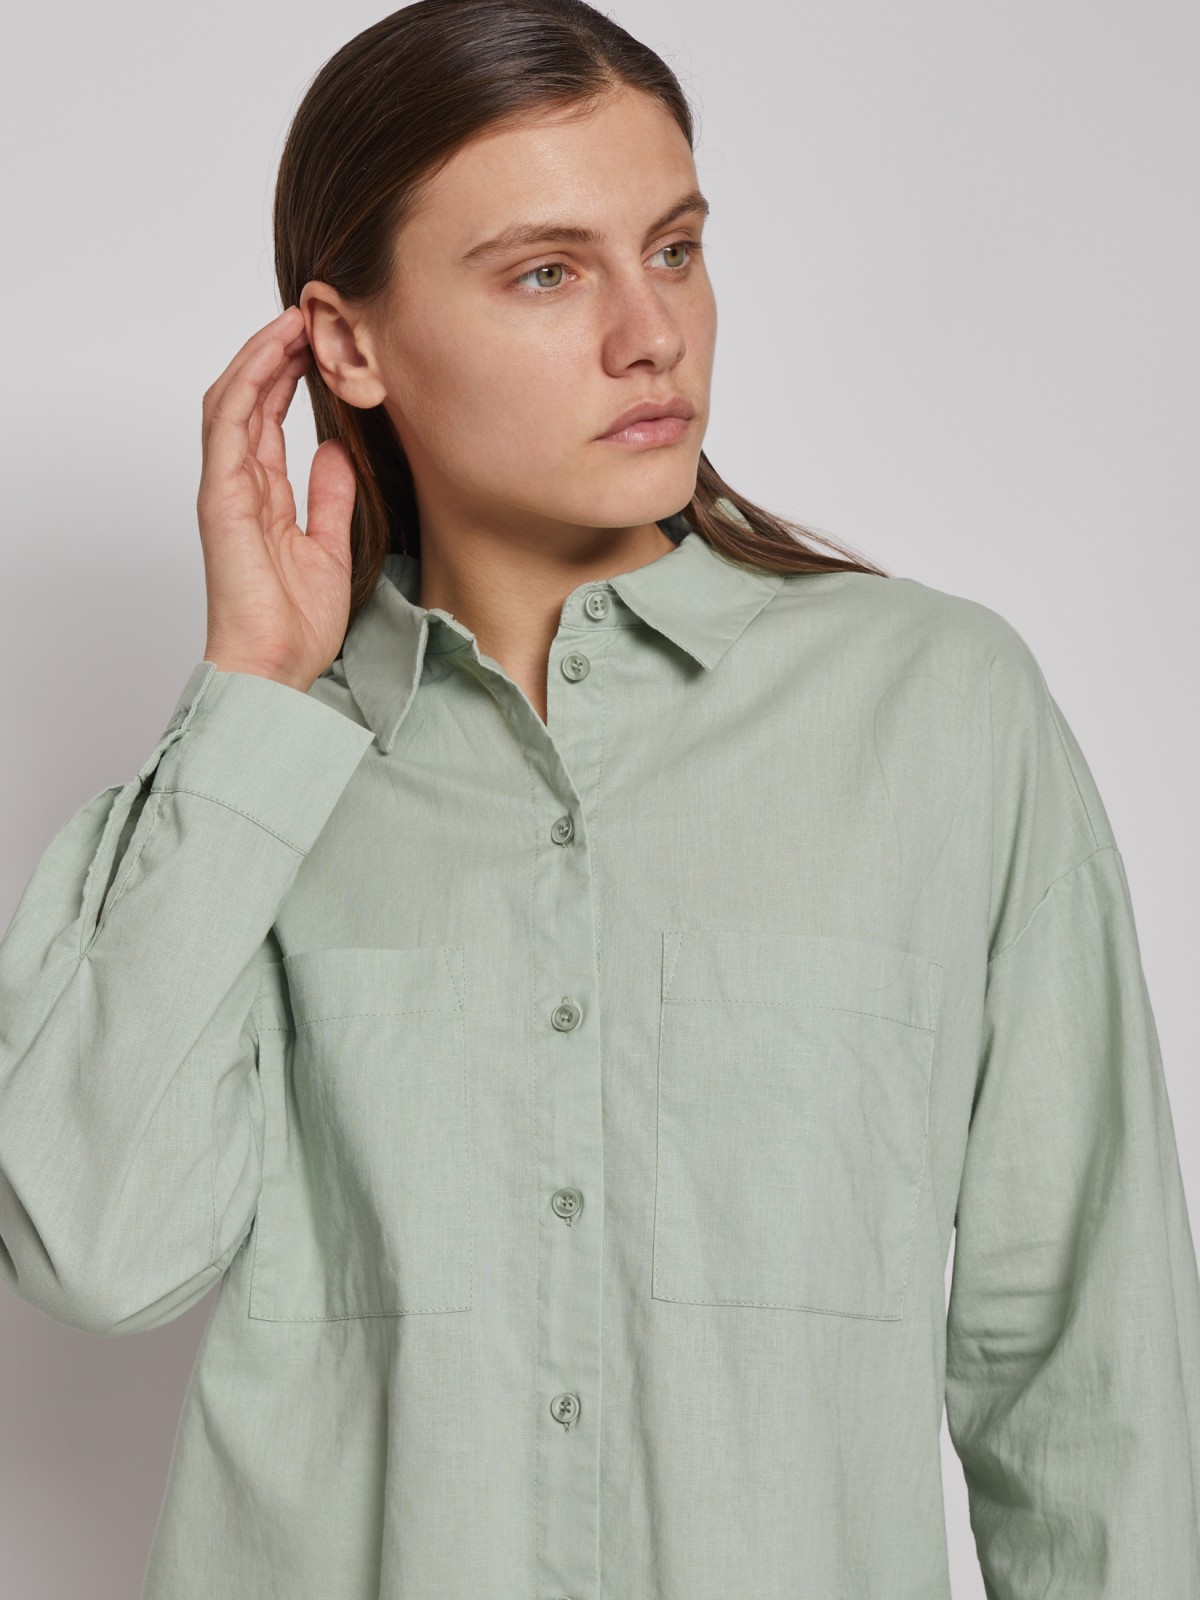 Рубашка с длинным рукавом zolla 022221191033, цвет светло-зеленый, размер XS - фото 5